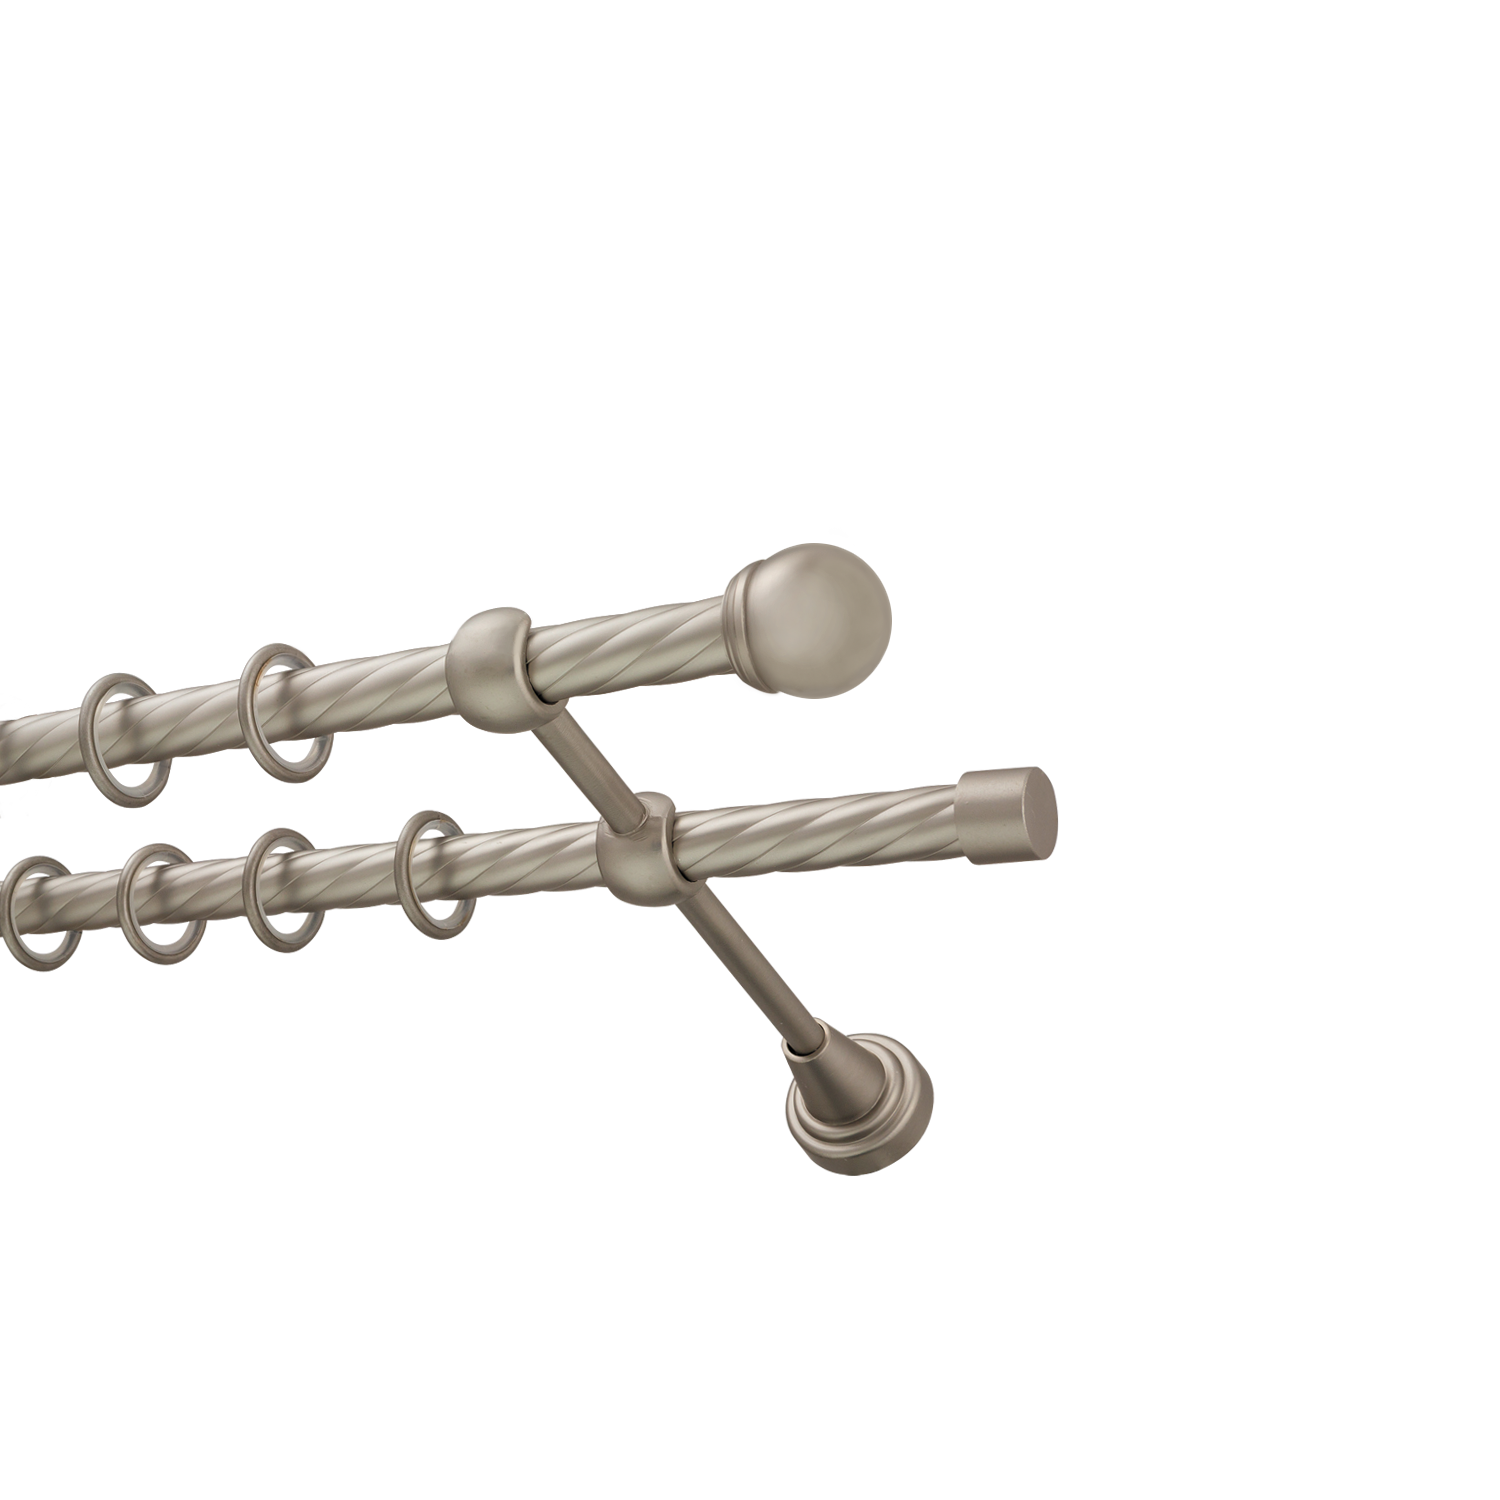 Металлический карниз для штор Вива, двухрядный 16/16 мм, сталь, витая штанга, длина 240 см - фото Wikidecor.ru